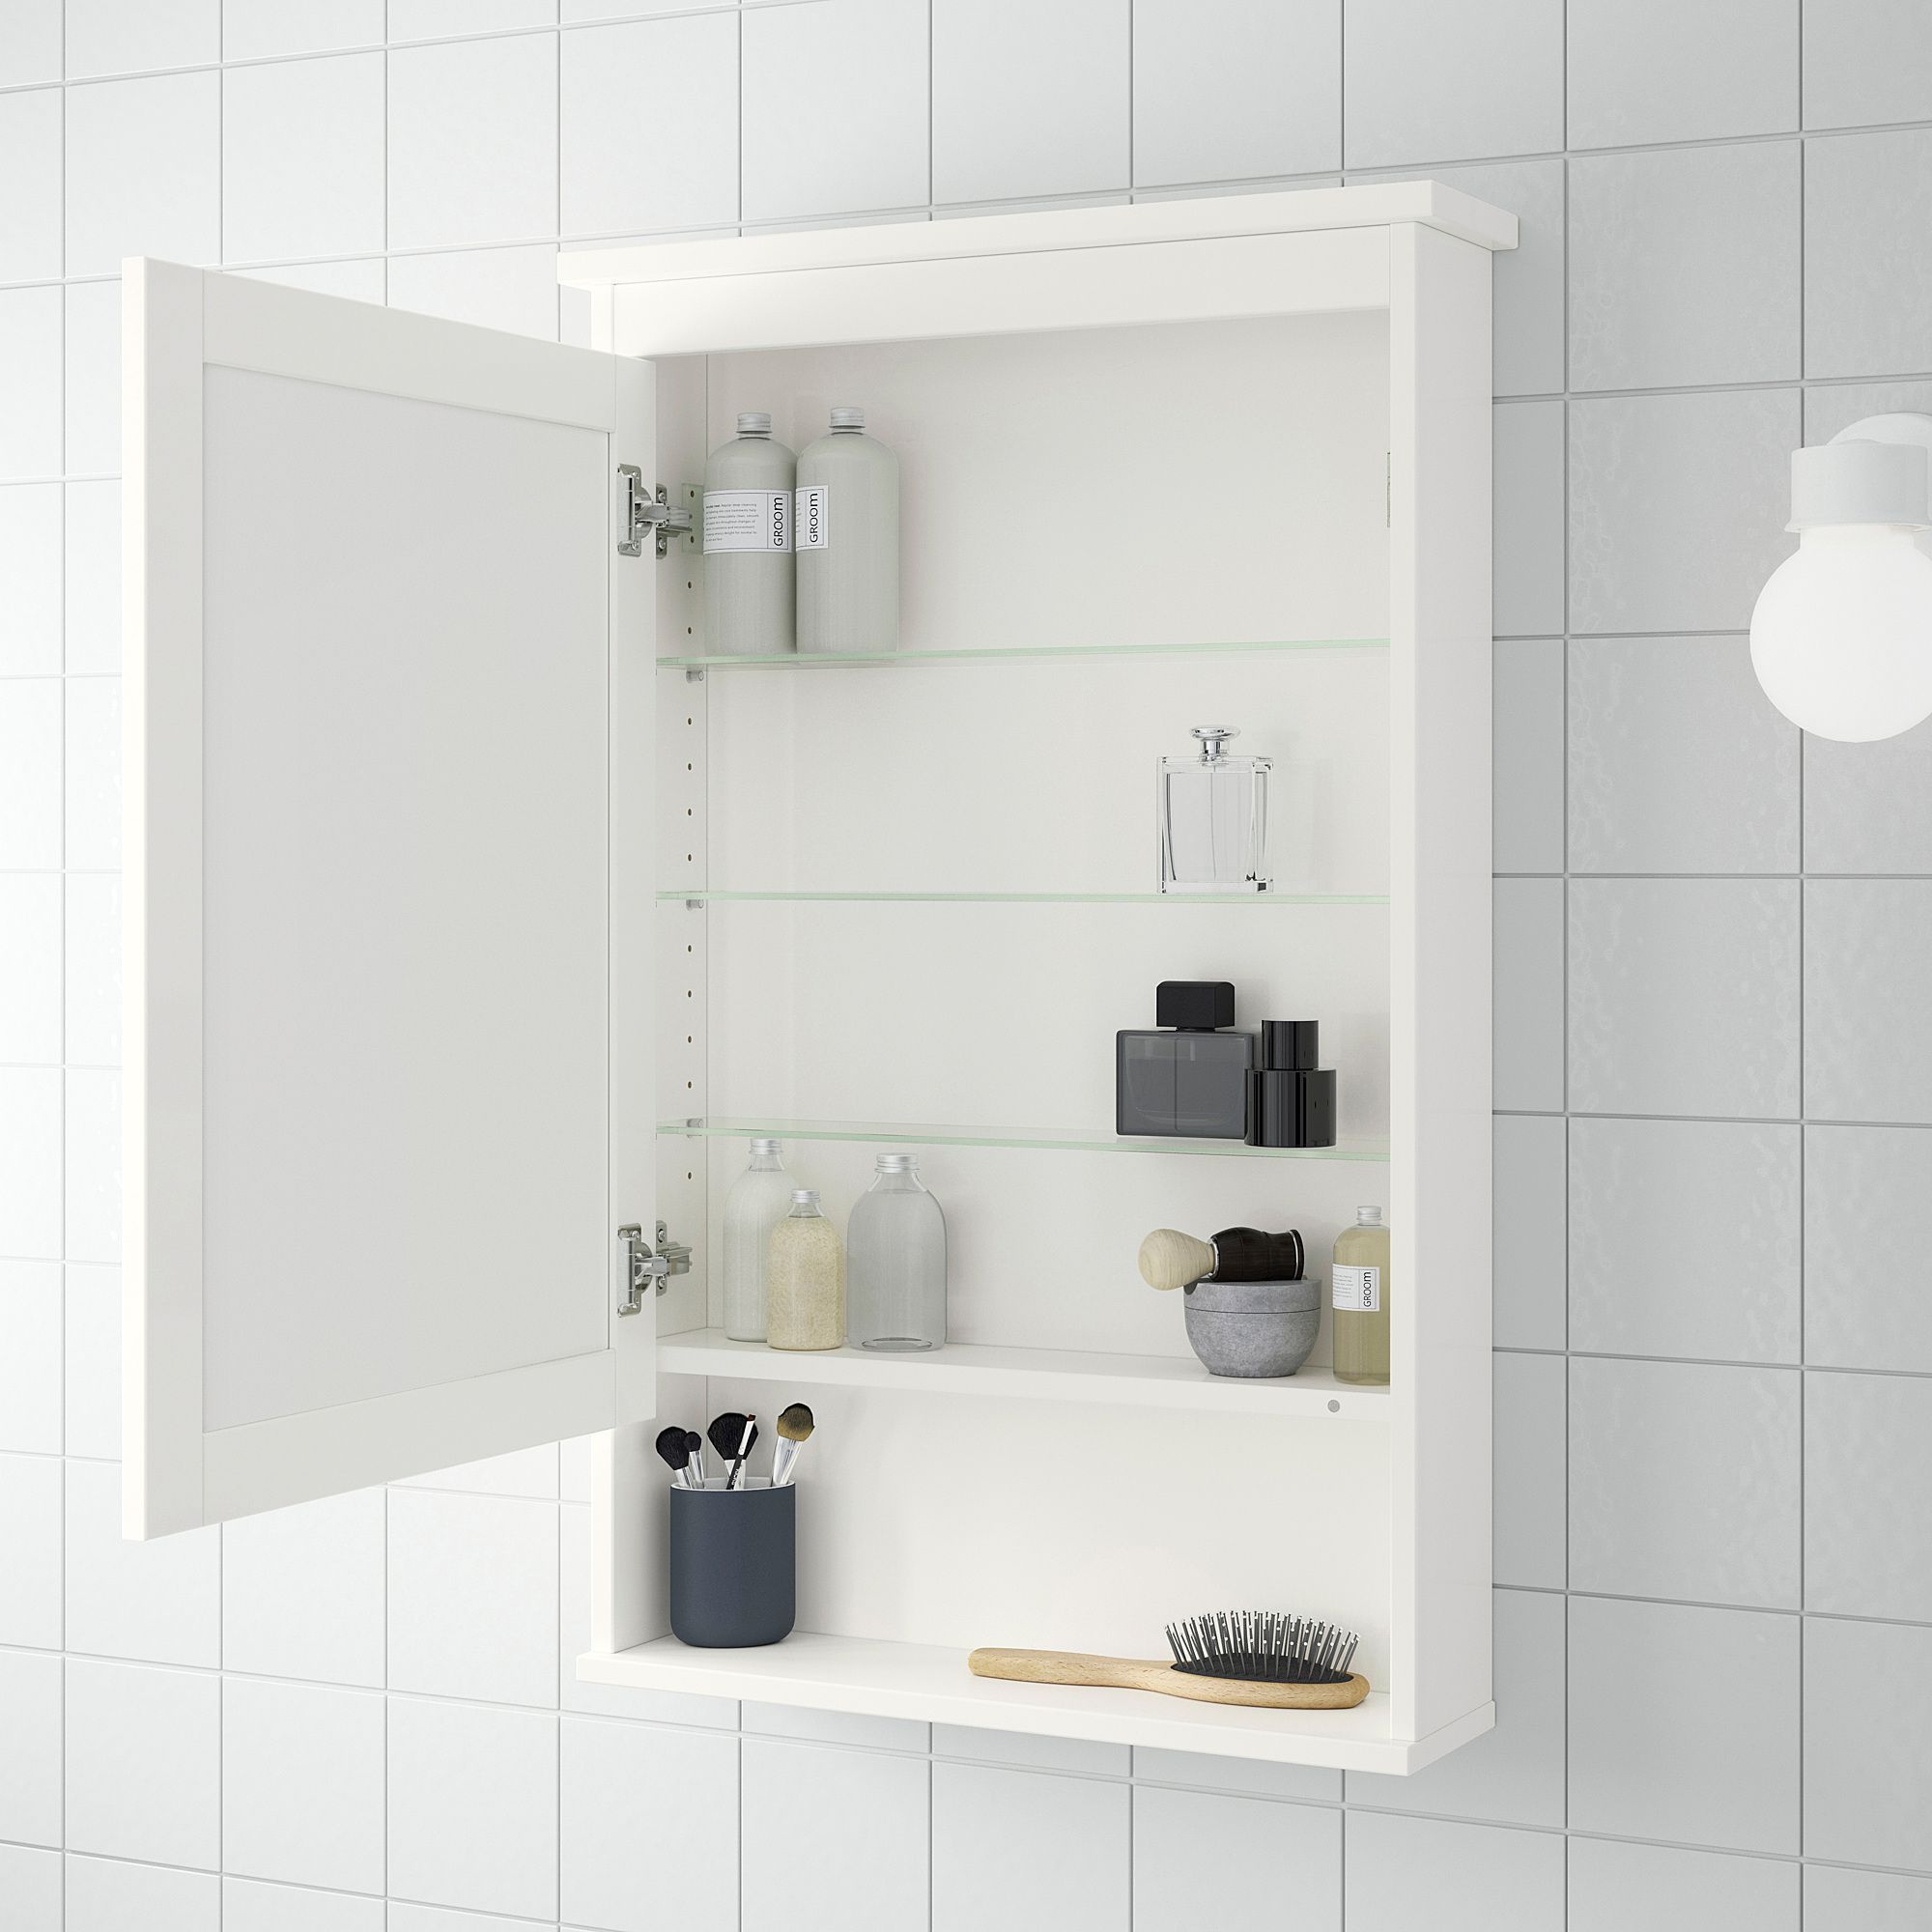 ХЕМНЭС зеркальный шкаф с 1 дверцей. ХЕМНЭС зеркальный шкаф с 1 дверцей, белый, белый 63x16x98 см. Икеа ХЕМНЭС зеркальный шкаф. Зеркало ХЕМНЭС икеа. Икеа шкаф ванна